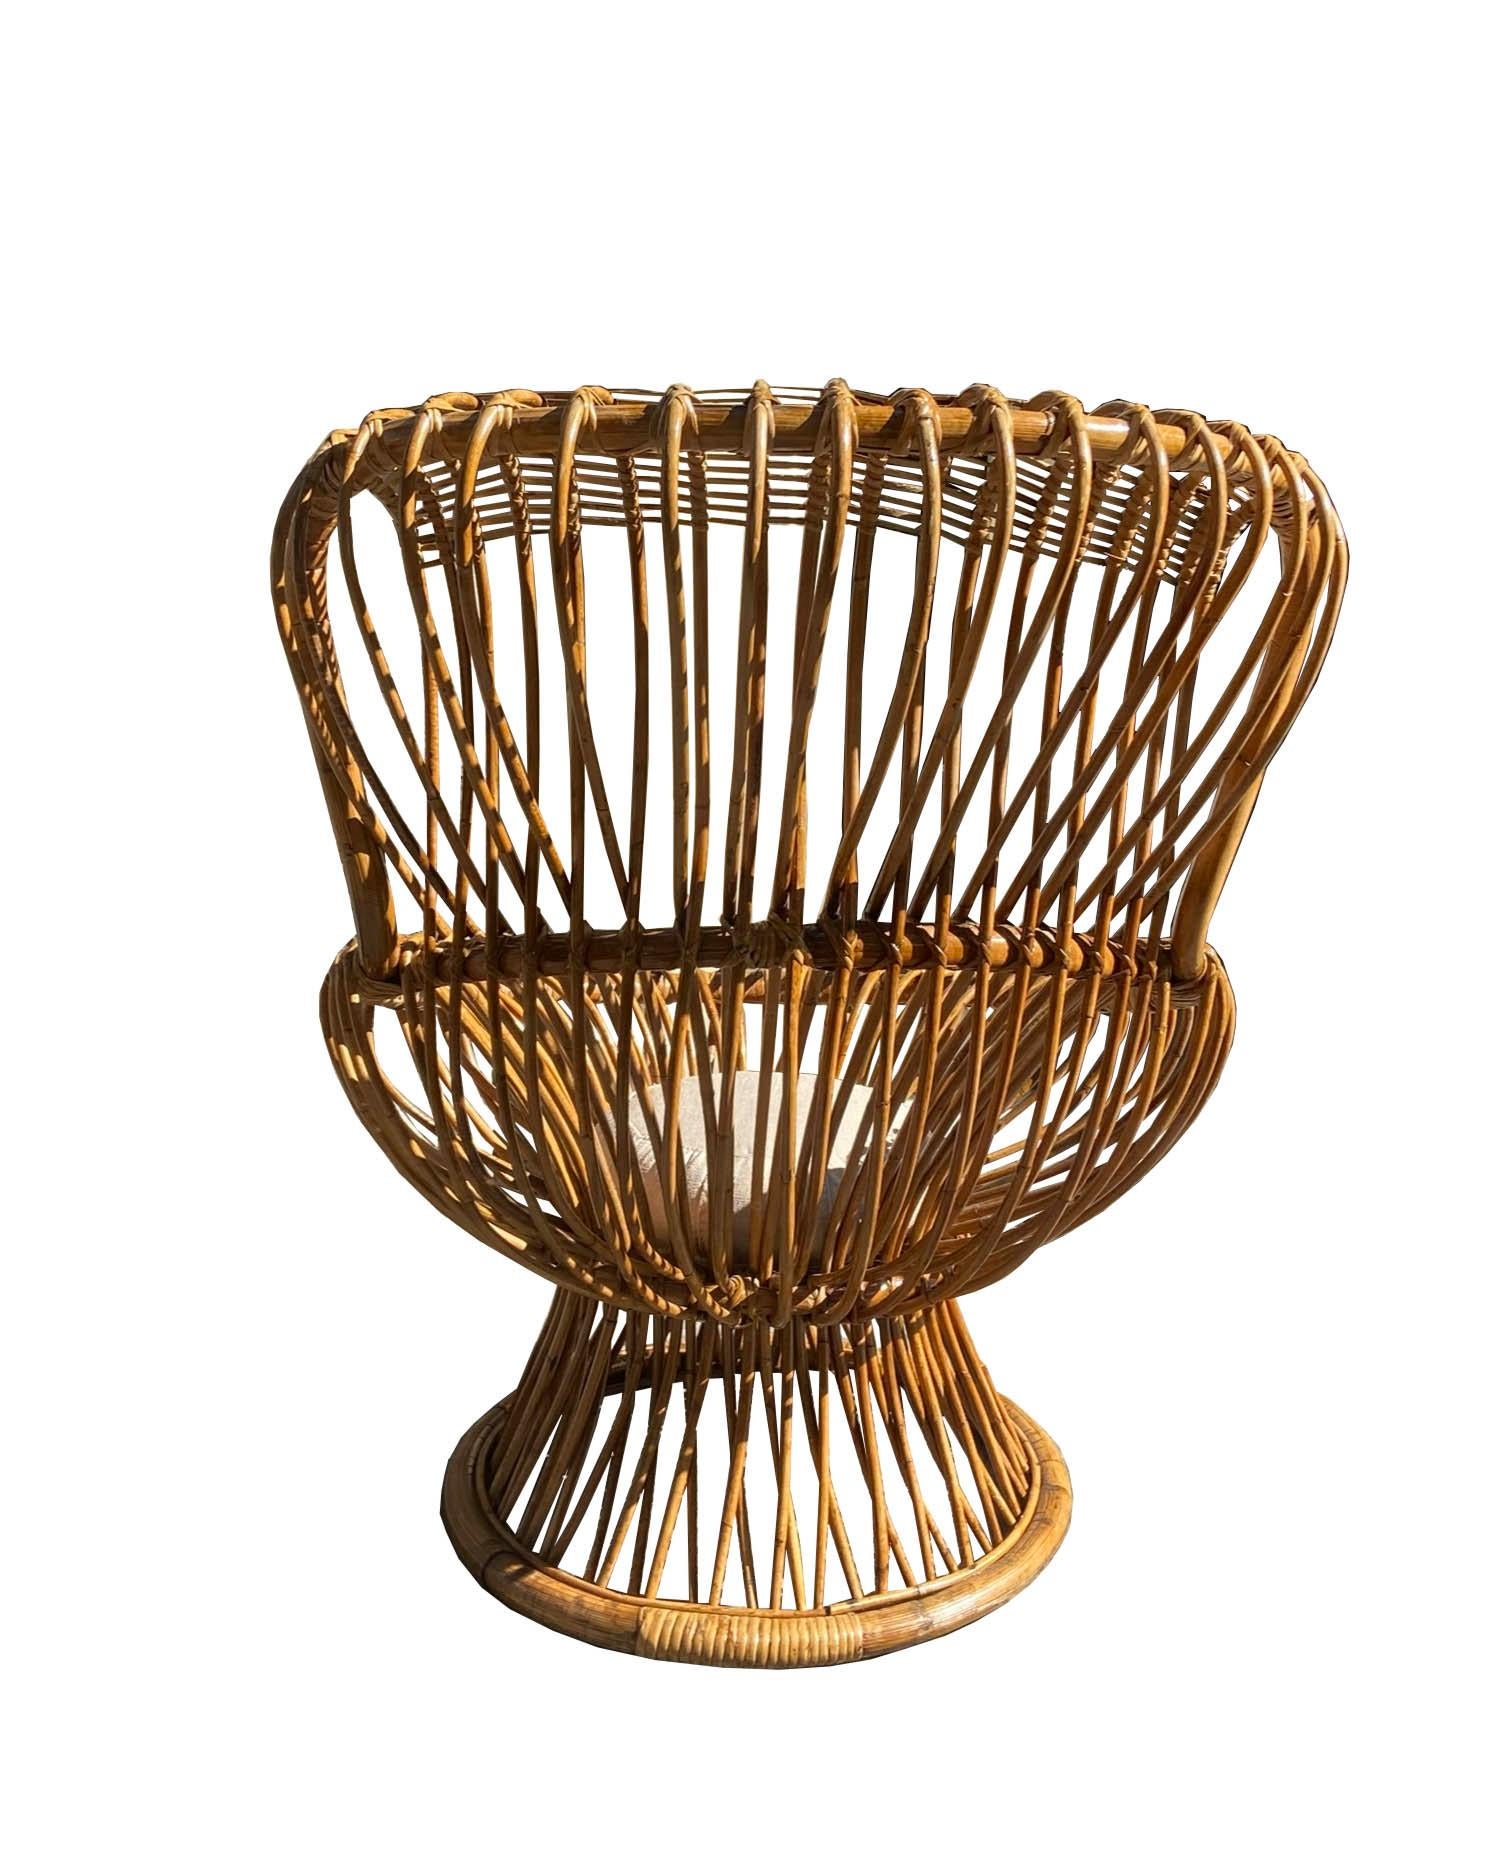 Italian Franco Albini for Bonacina Margherita Chair, Italy, 1950s